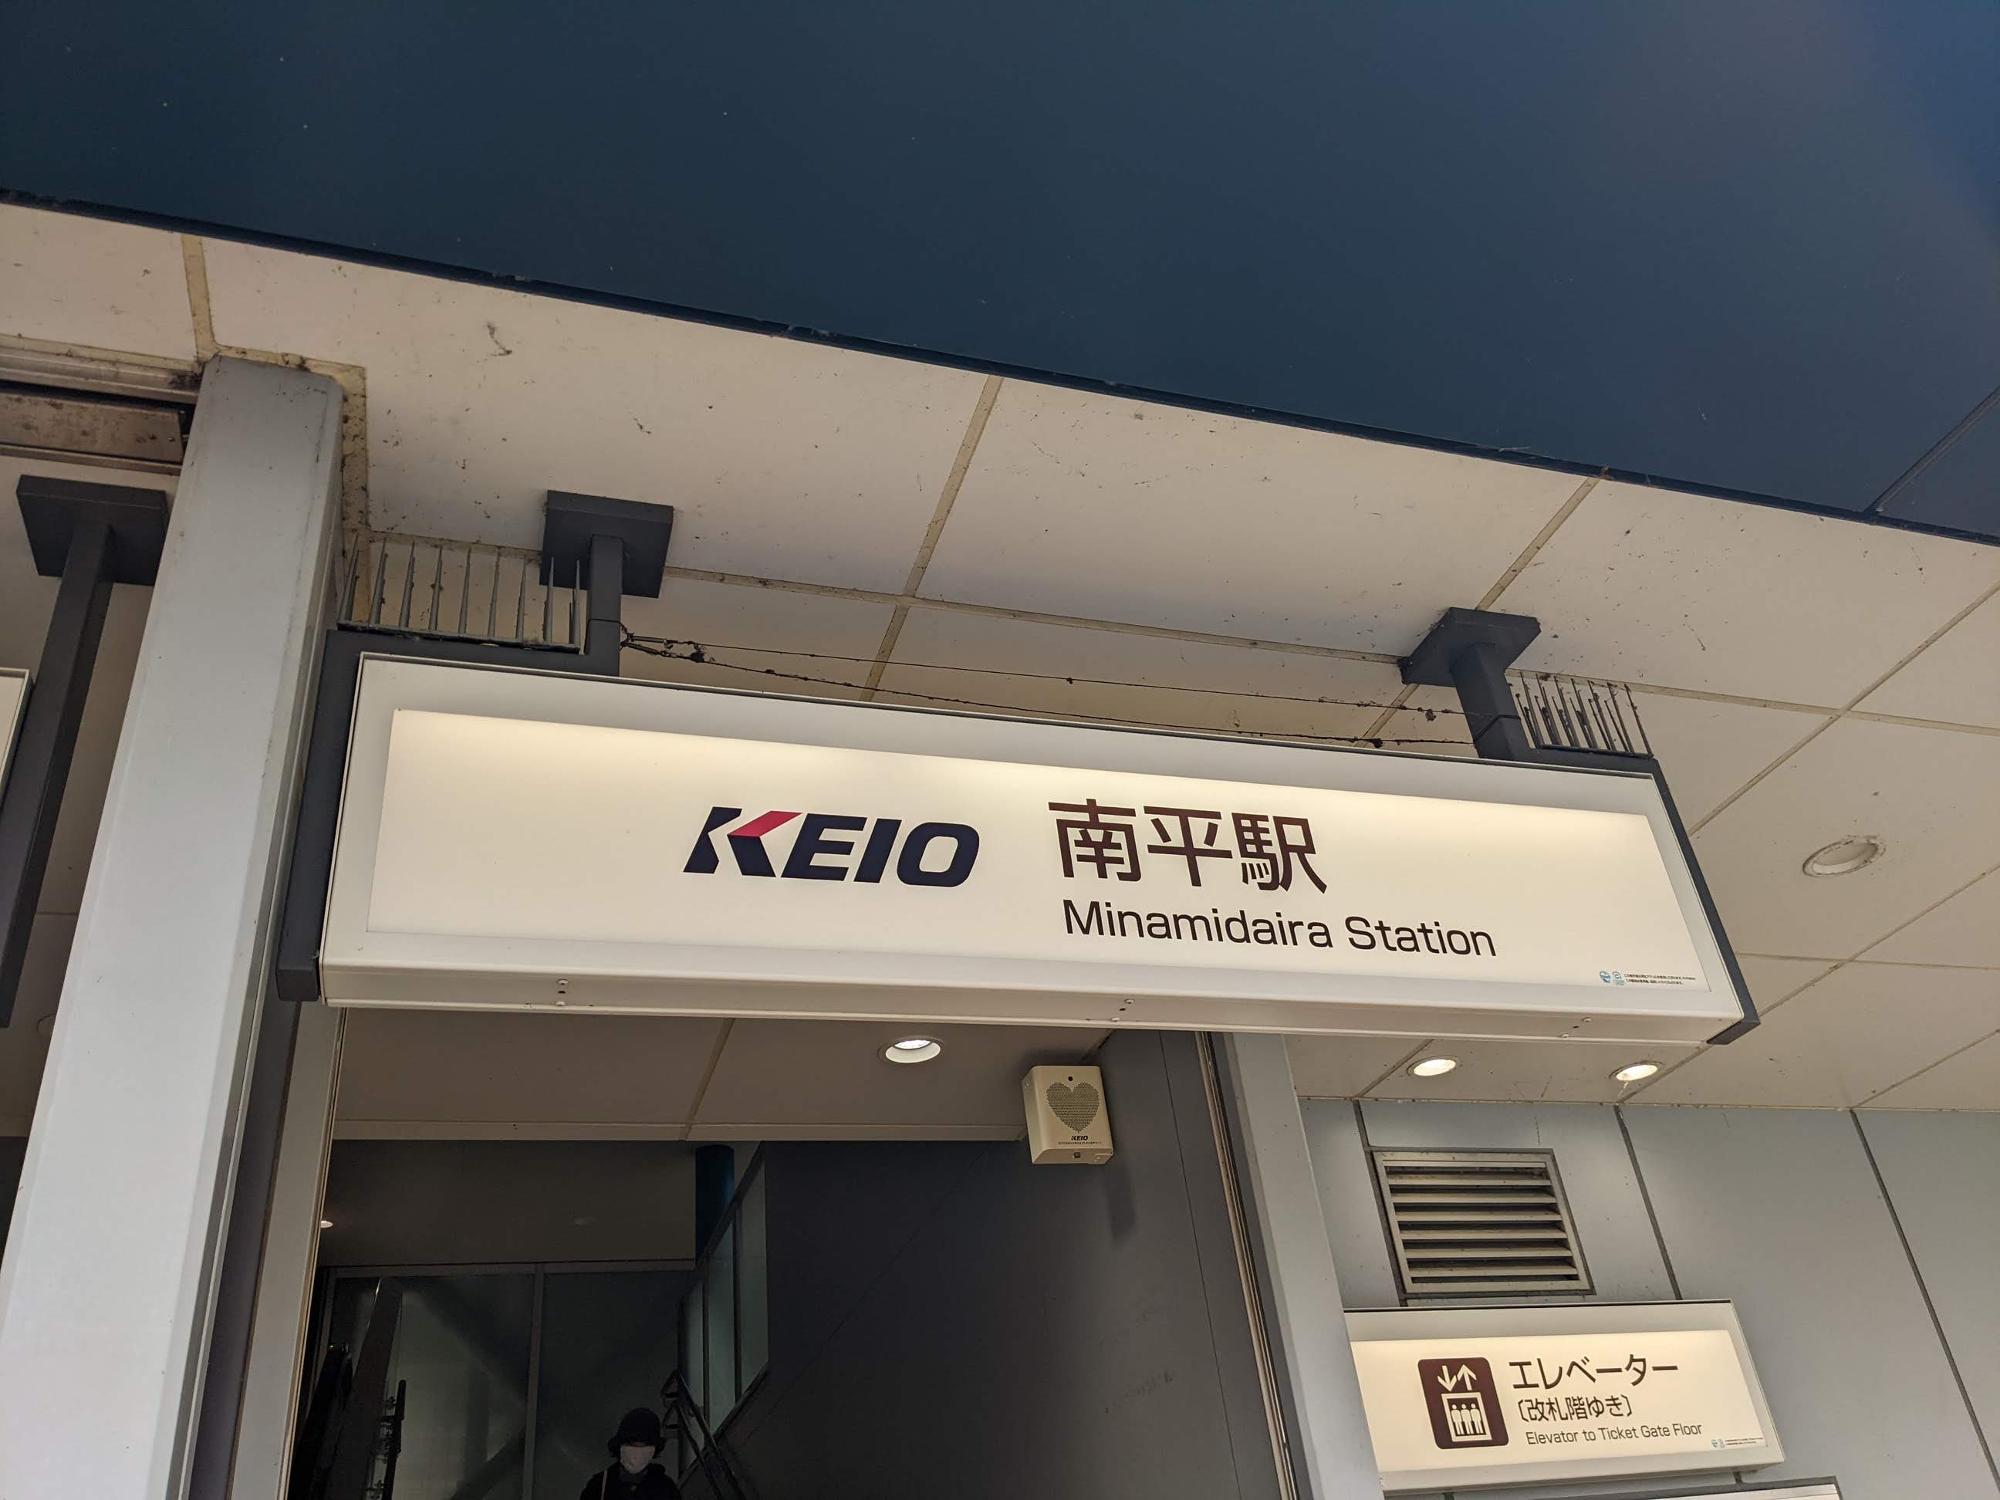 京王線南平駅。「なんぺい」ではなく「みなみだいら」です。